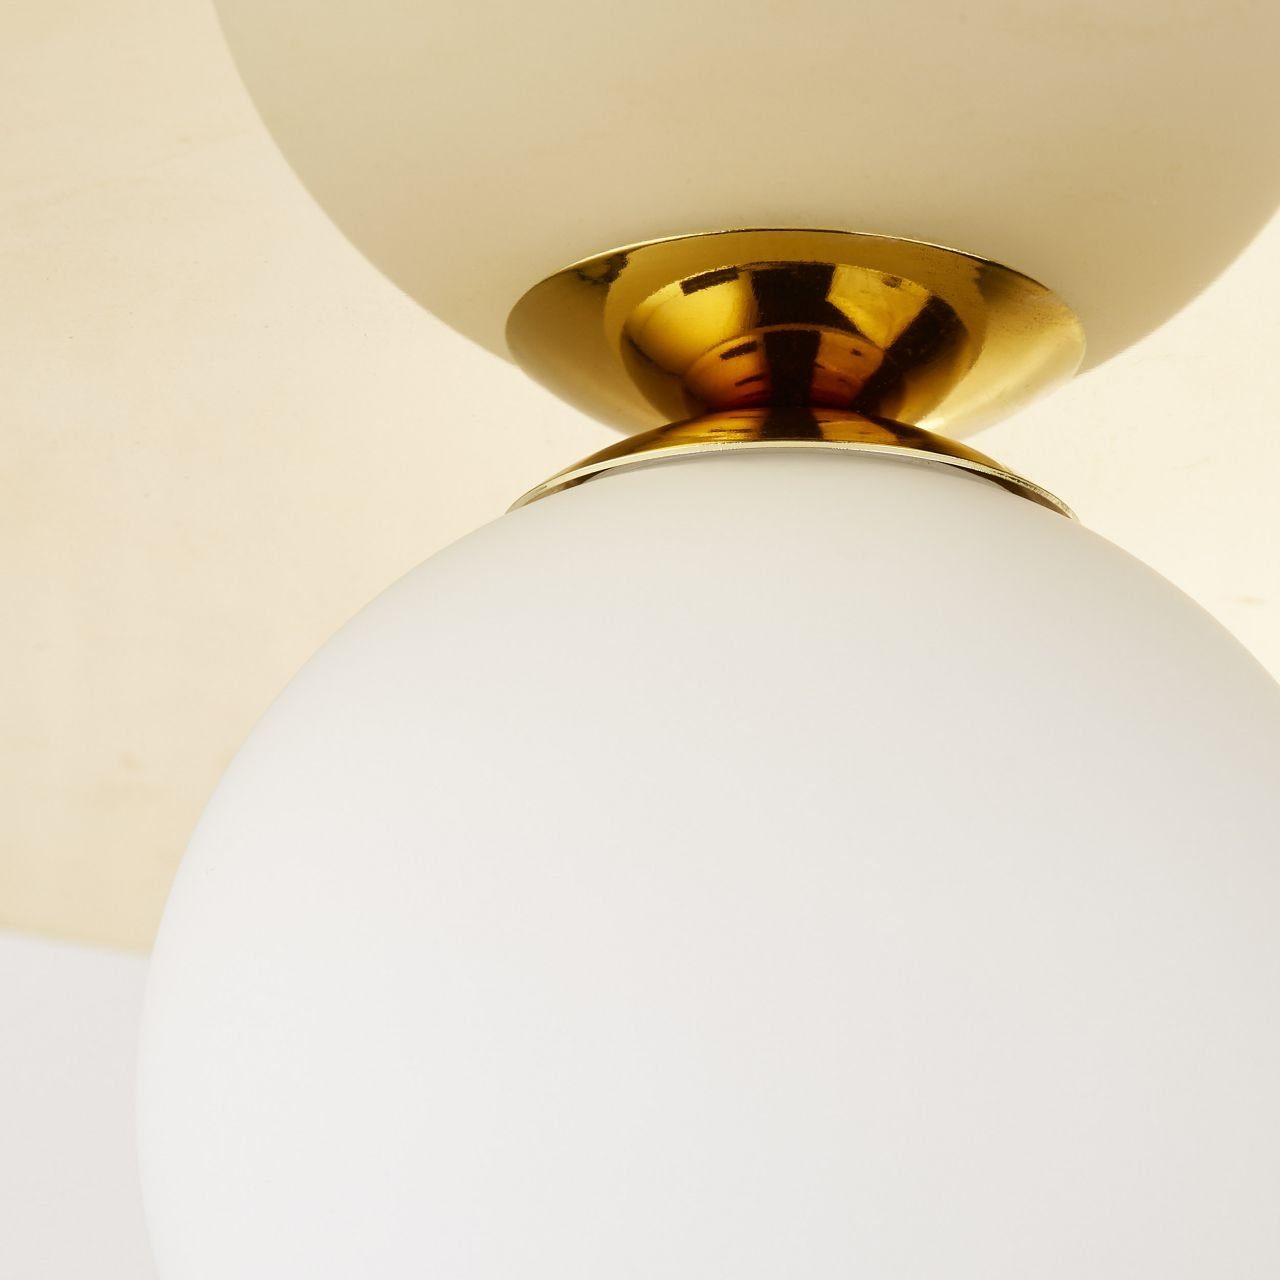 Brilliant Wandleuchte Zon, Lampe Zondra 1x Wandspot für QT14, geeignet 10W, gold G9, Stiftsocke